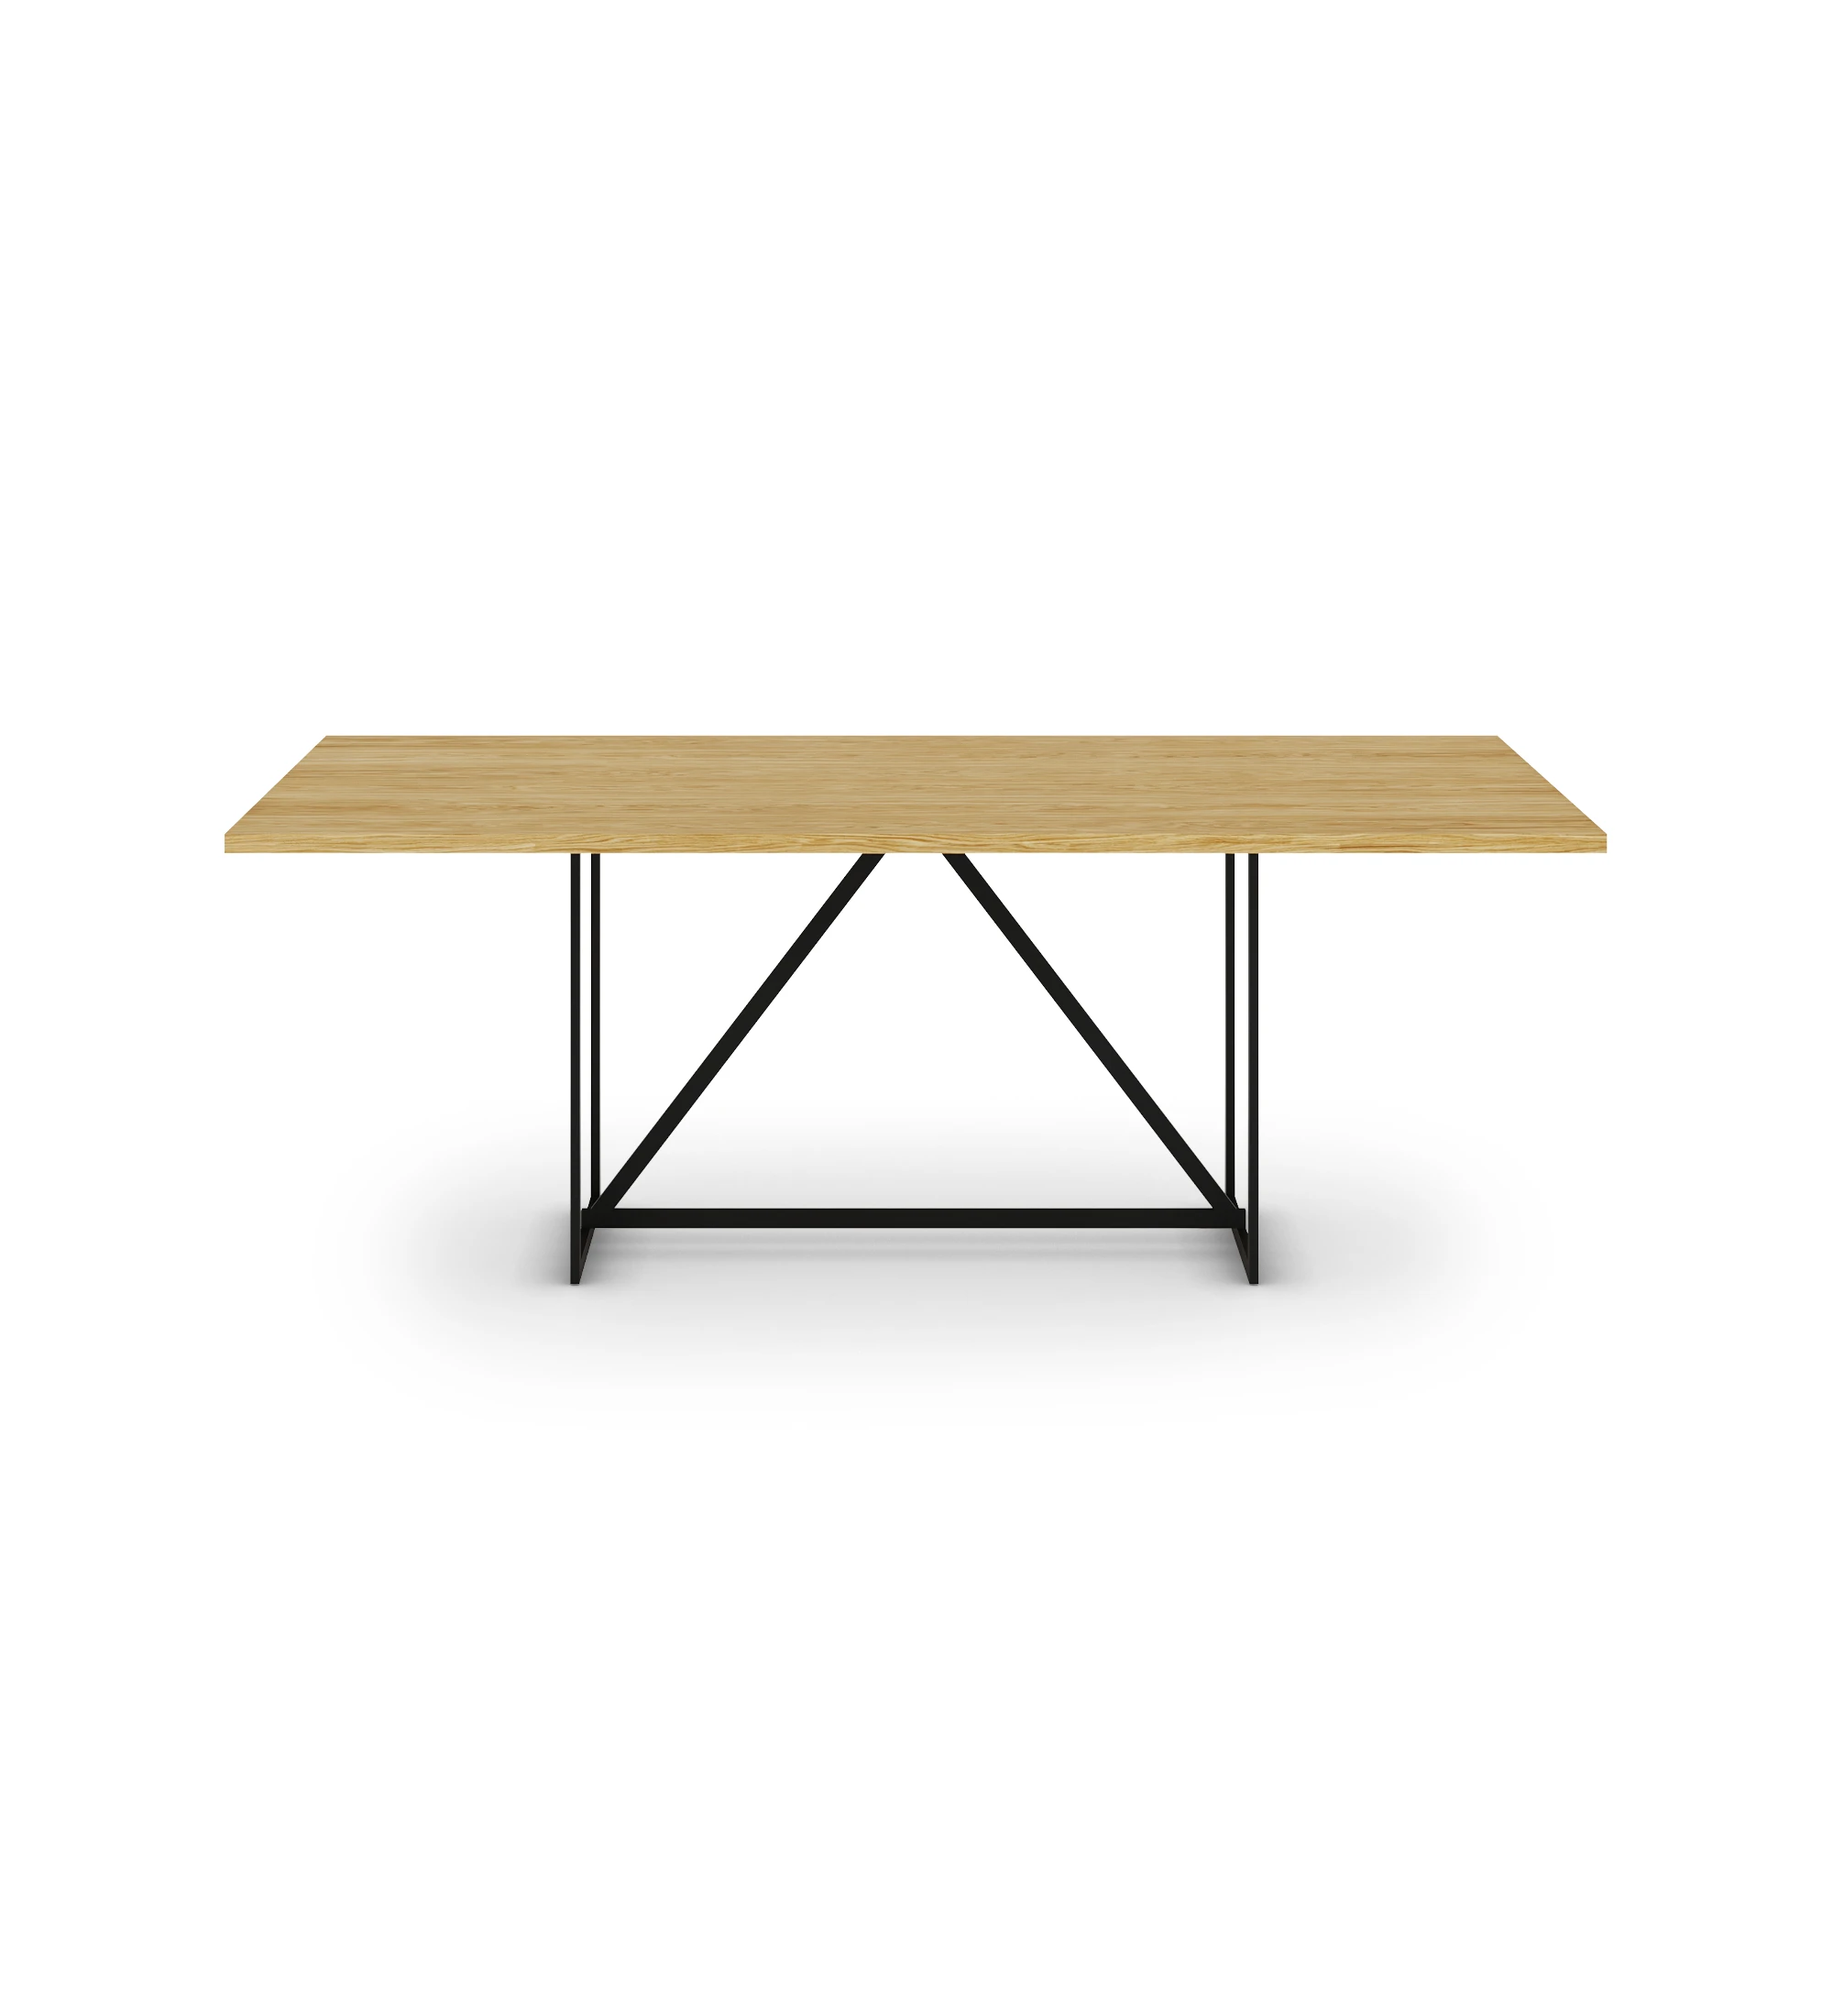 Mesa de comedor Chicago rectangular 180 x 100 cm, tapa en roble natural, pies en metal lacado negro.